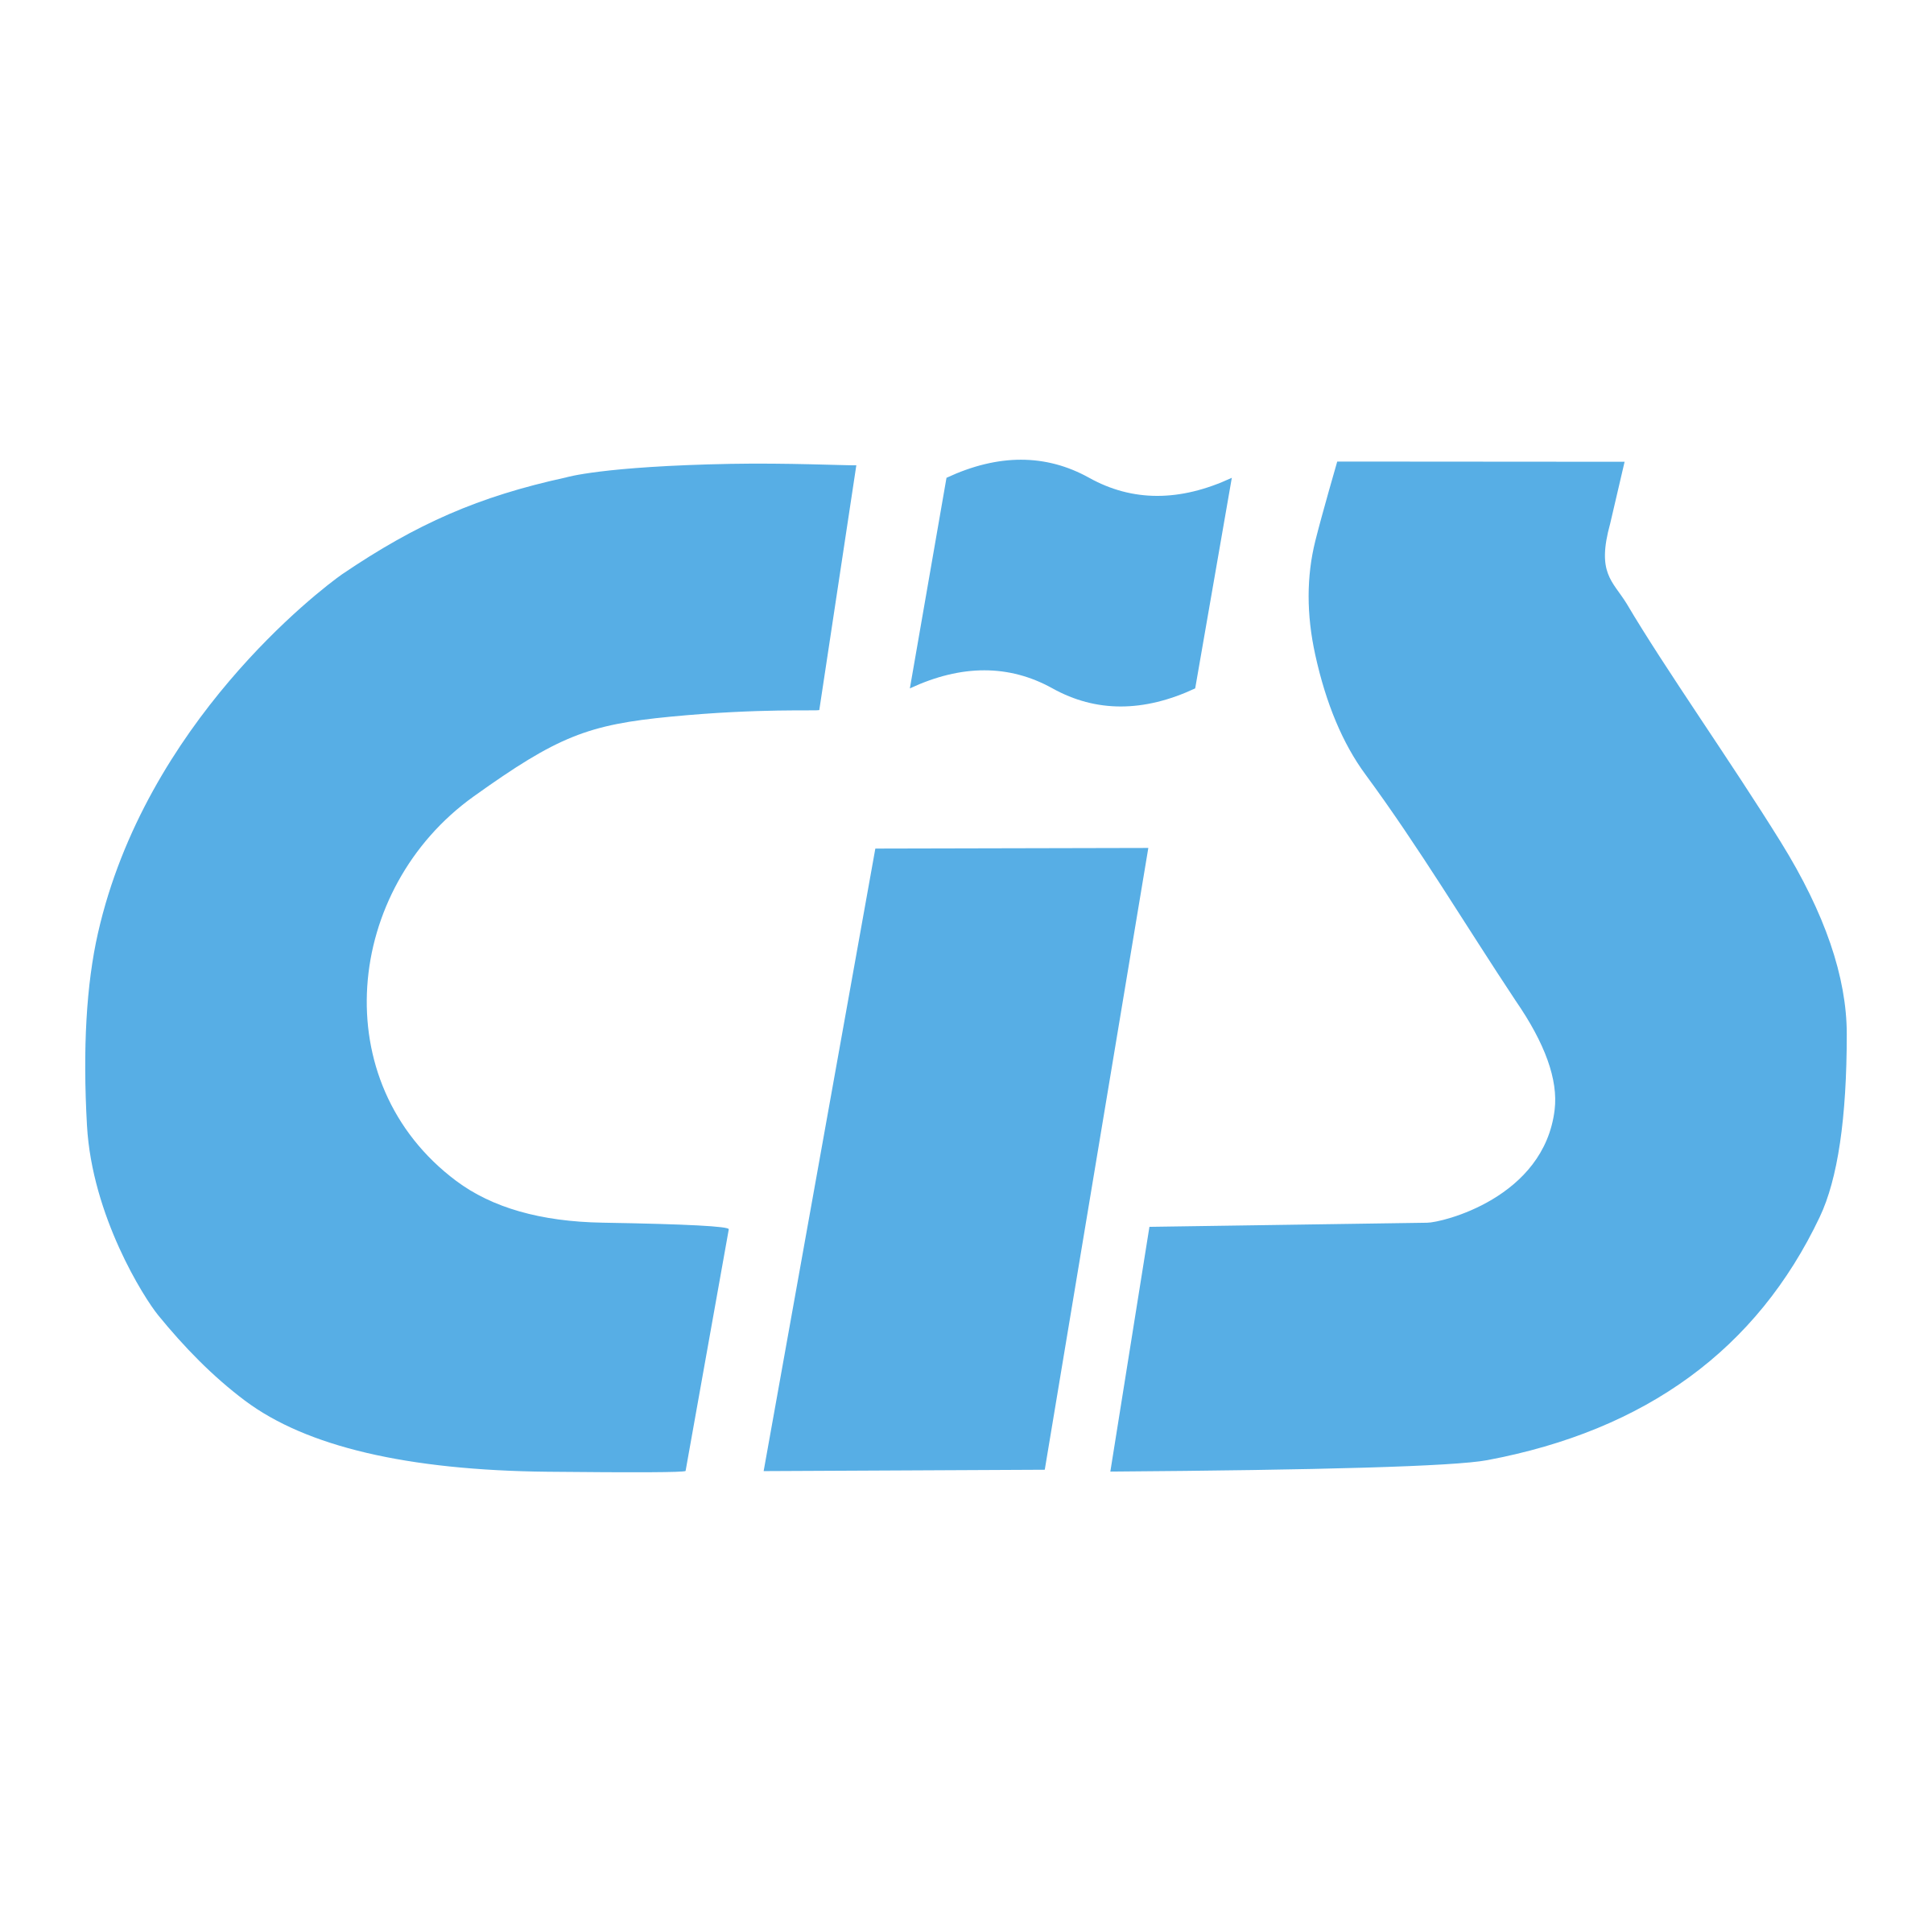 CIS Logo - CIS Logo PNG Transparent & SVG Vector - Freebie Supply